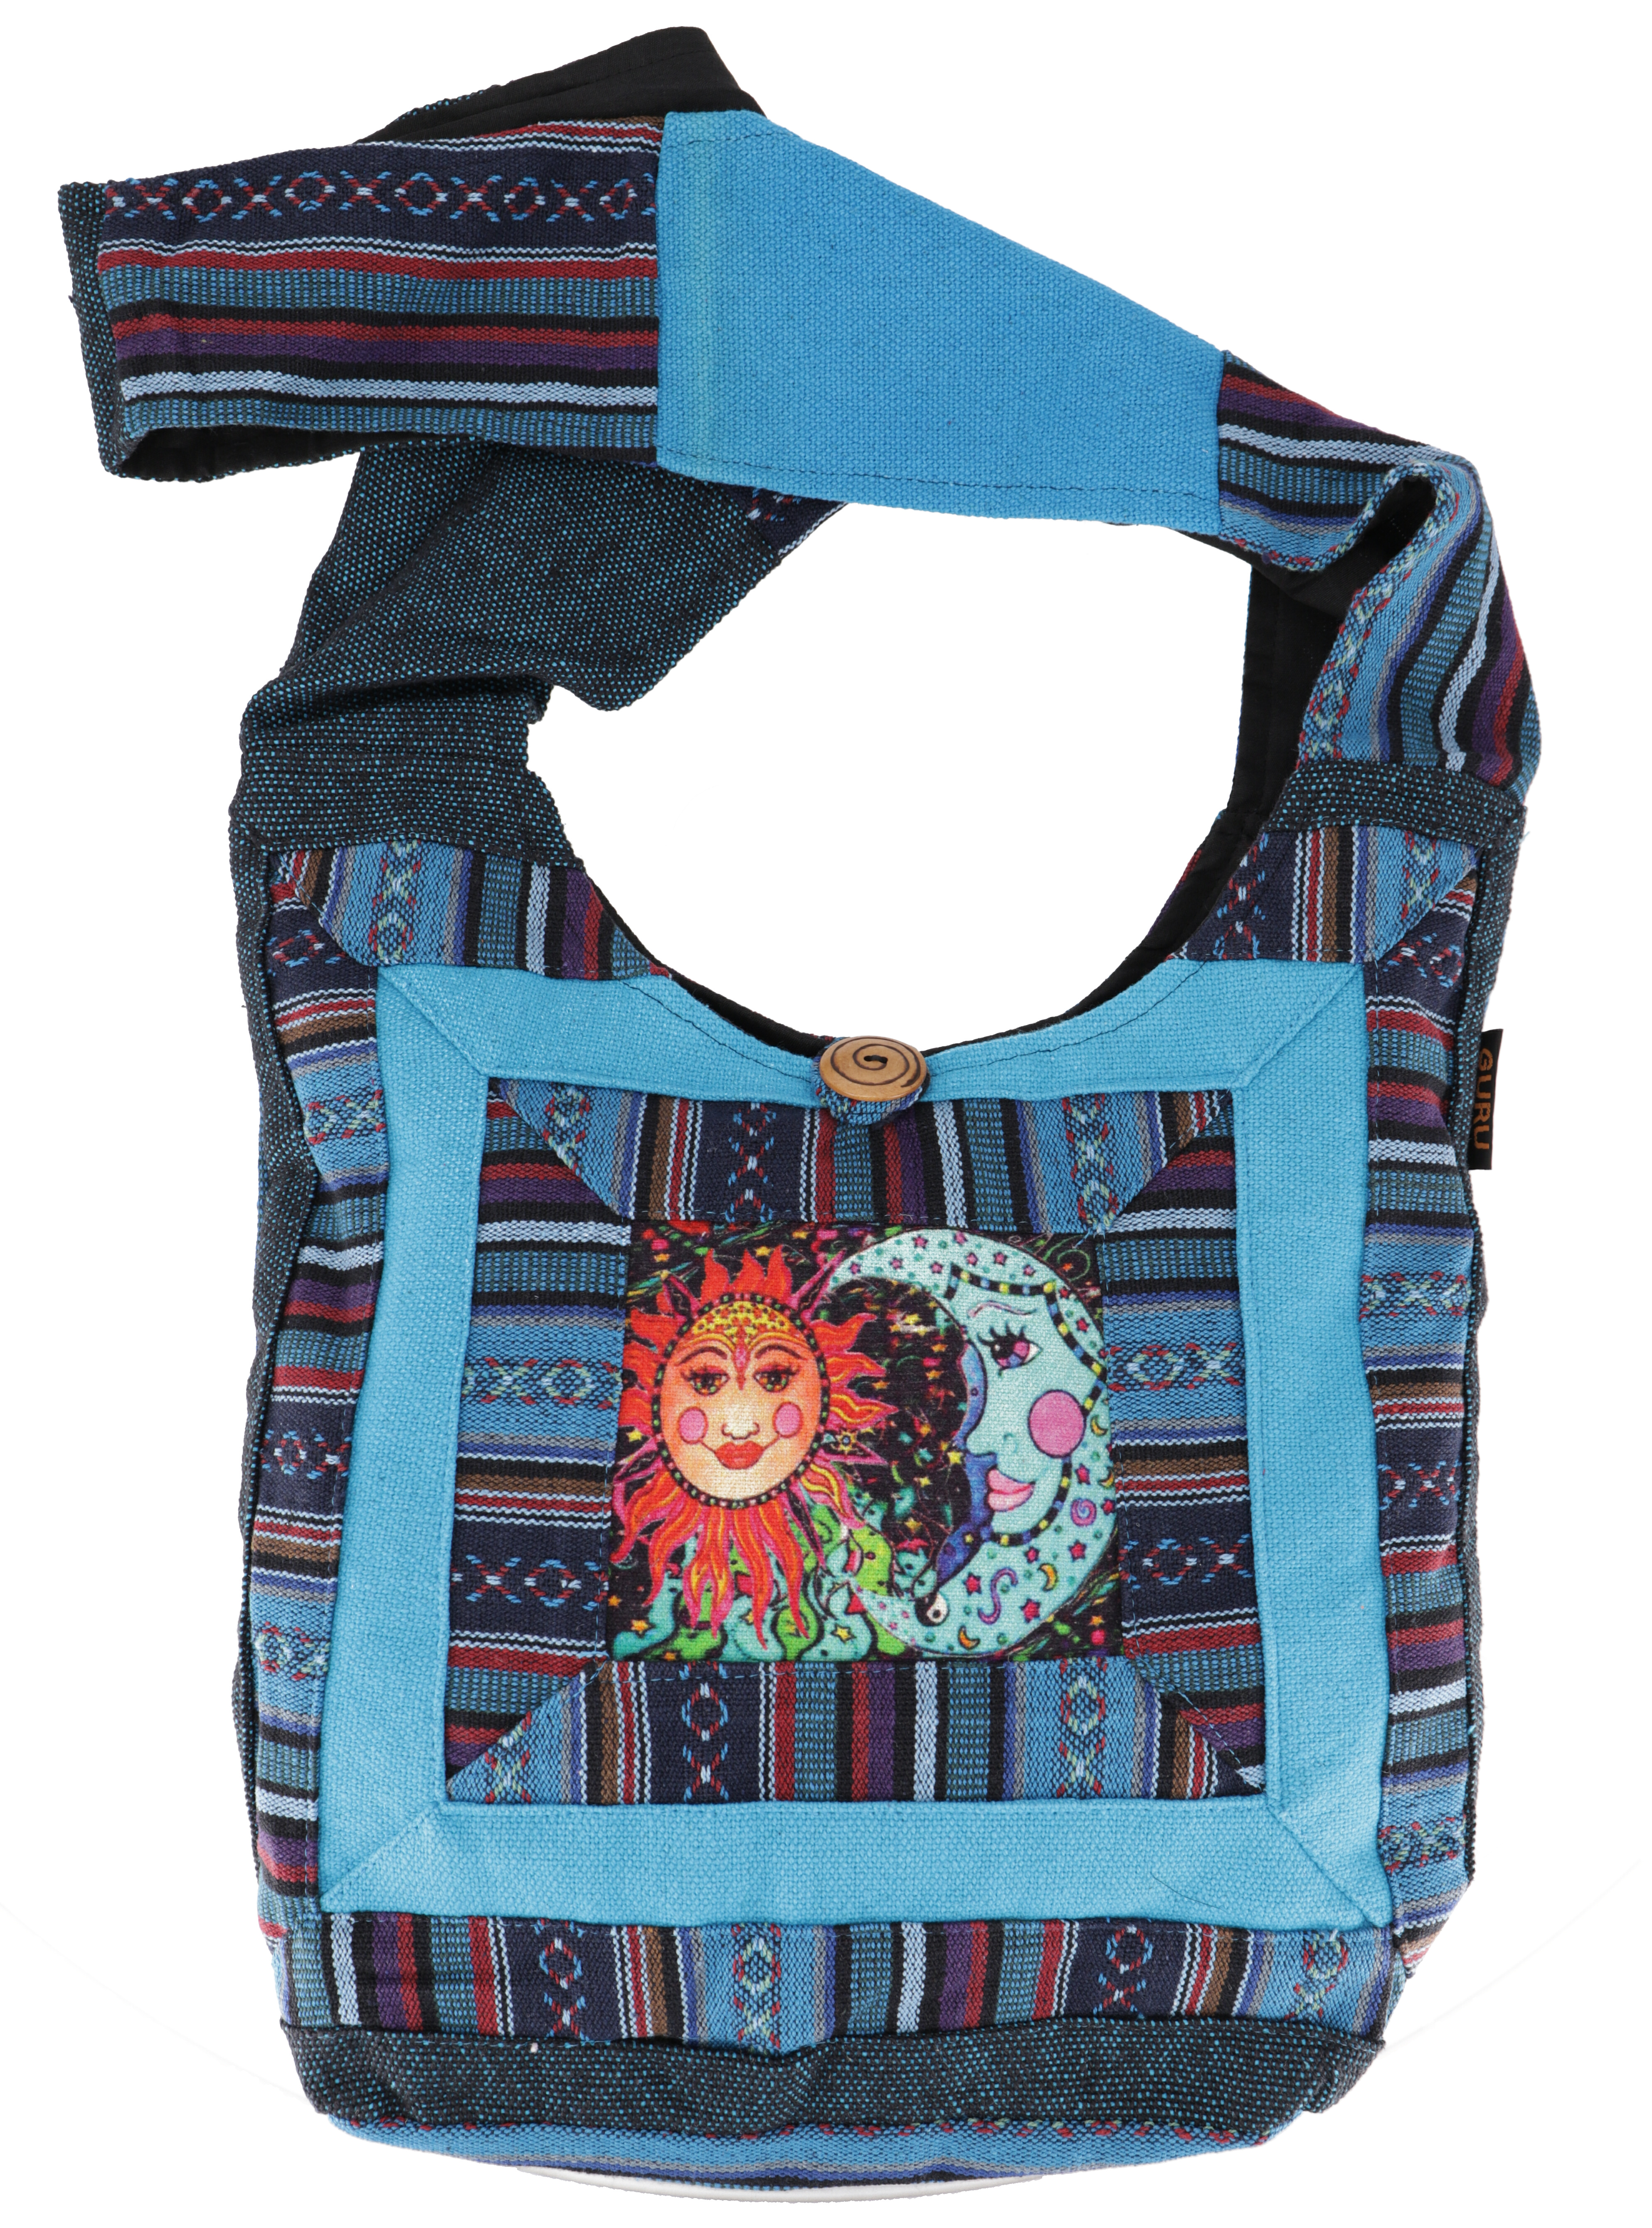 Schultertasche, Hippie Tasche, Goa Schulterbeutel mit Sonne und Mond - blau